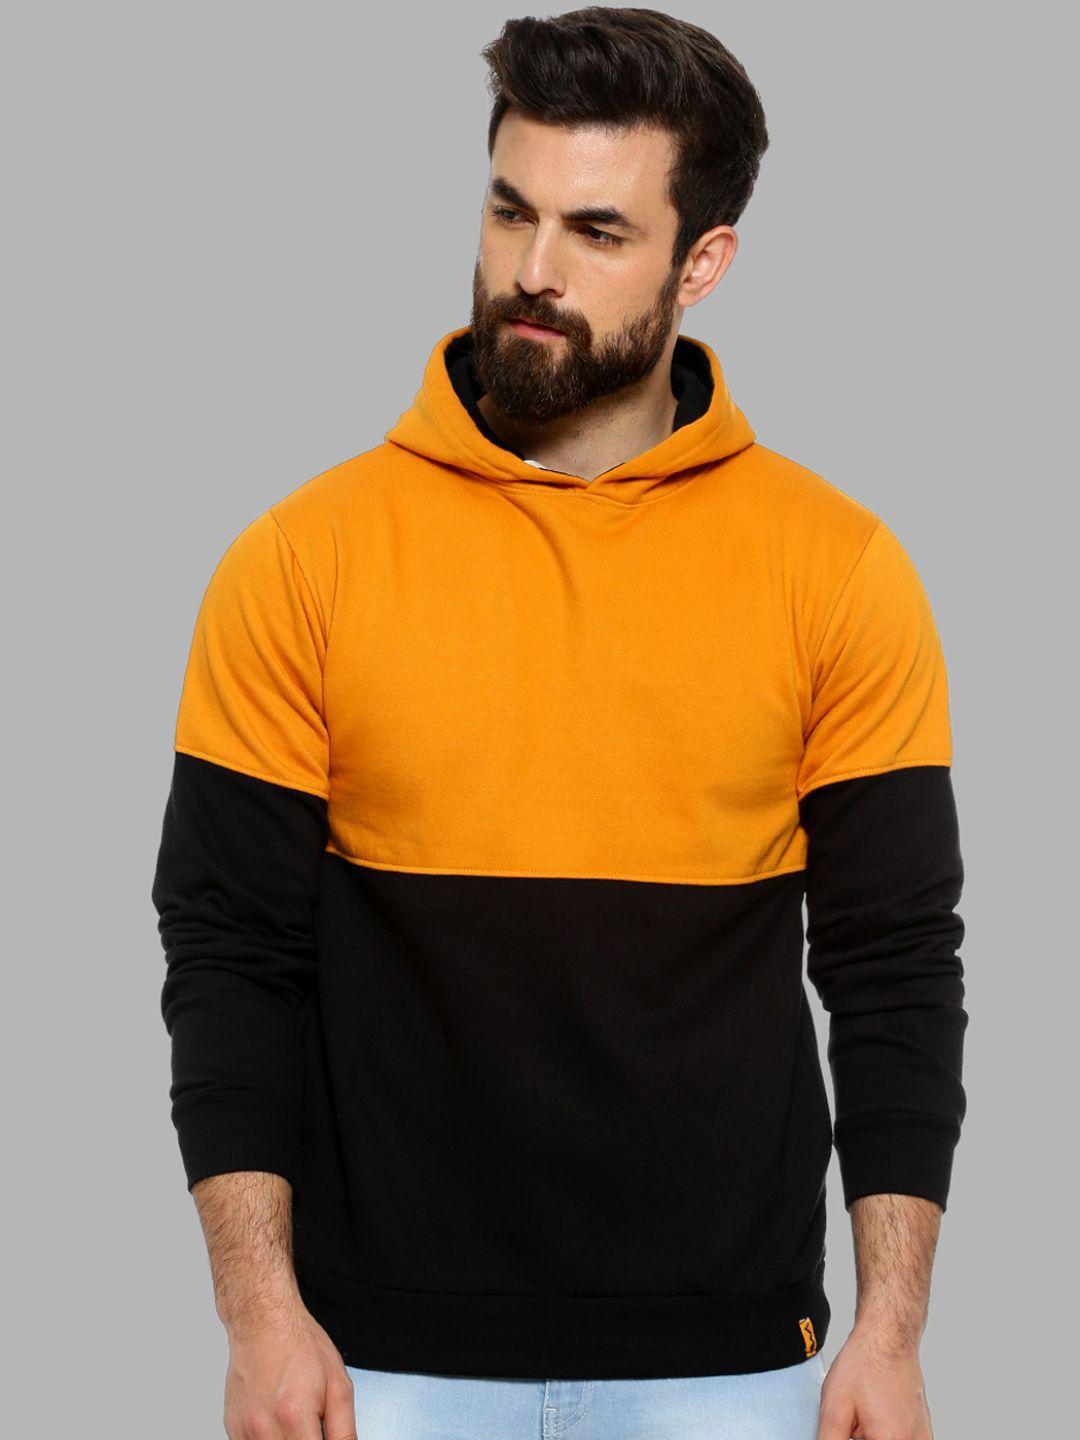 Campus Sutra Men Mustard & Black Colourblocked Hooded Sweatshirt